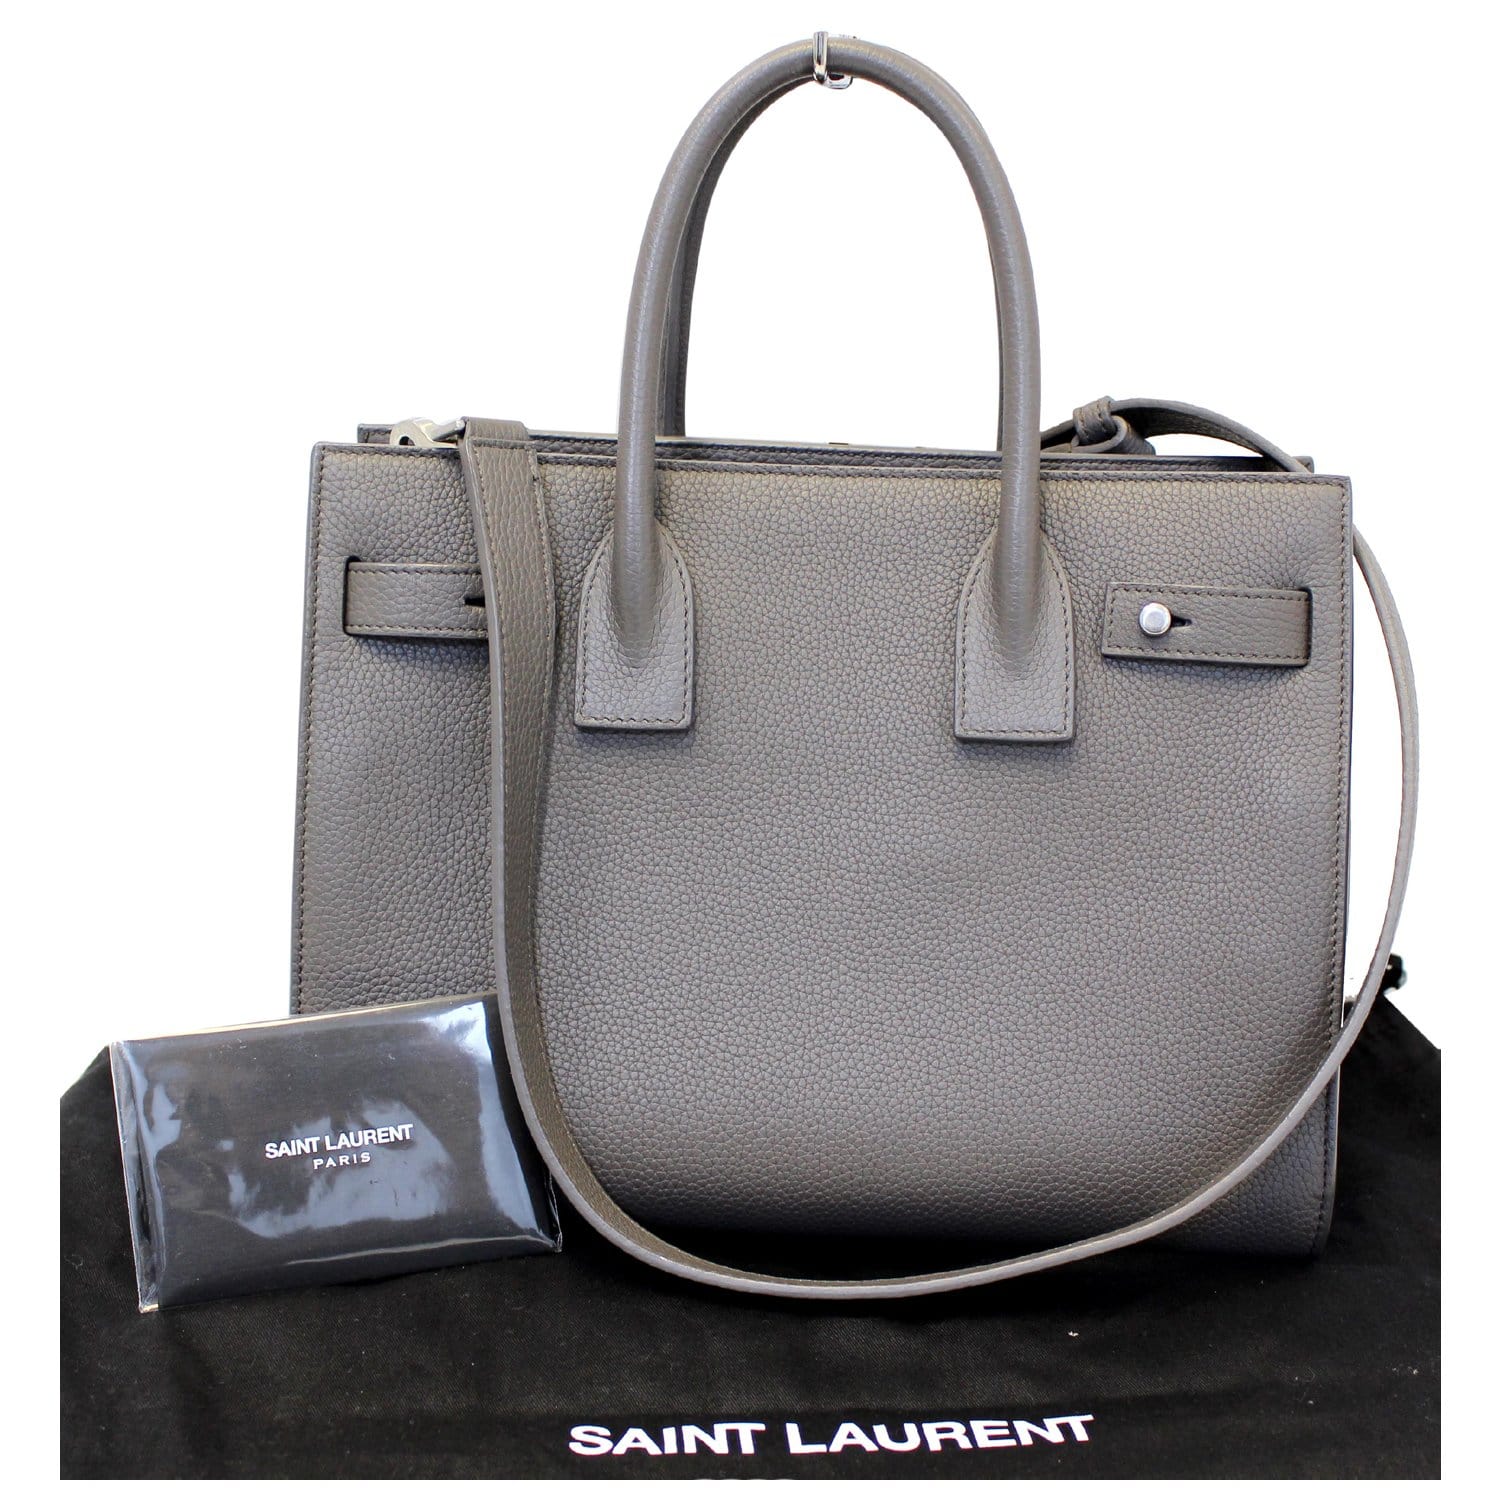 🌟THE BEST SAINT LAURENT BAG EVER!🌟YSL SAC DE JOUR- 5 year review! 